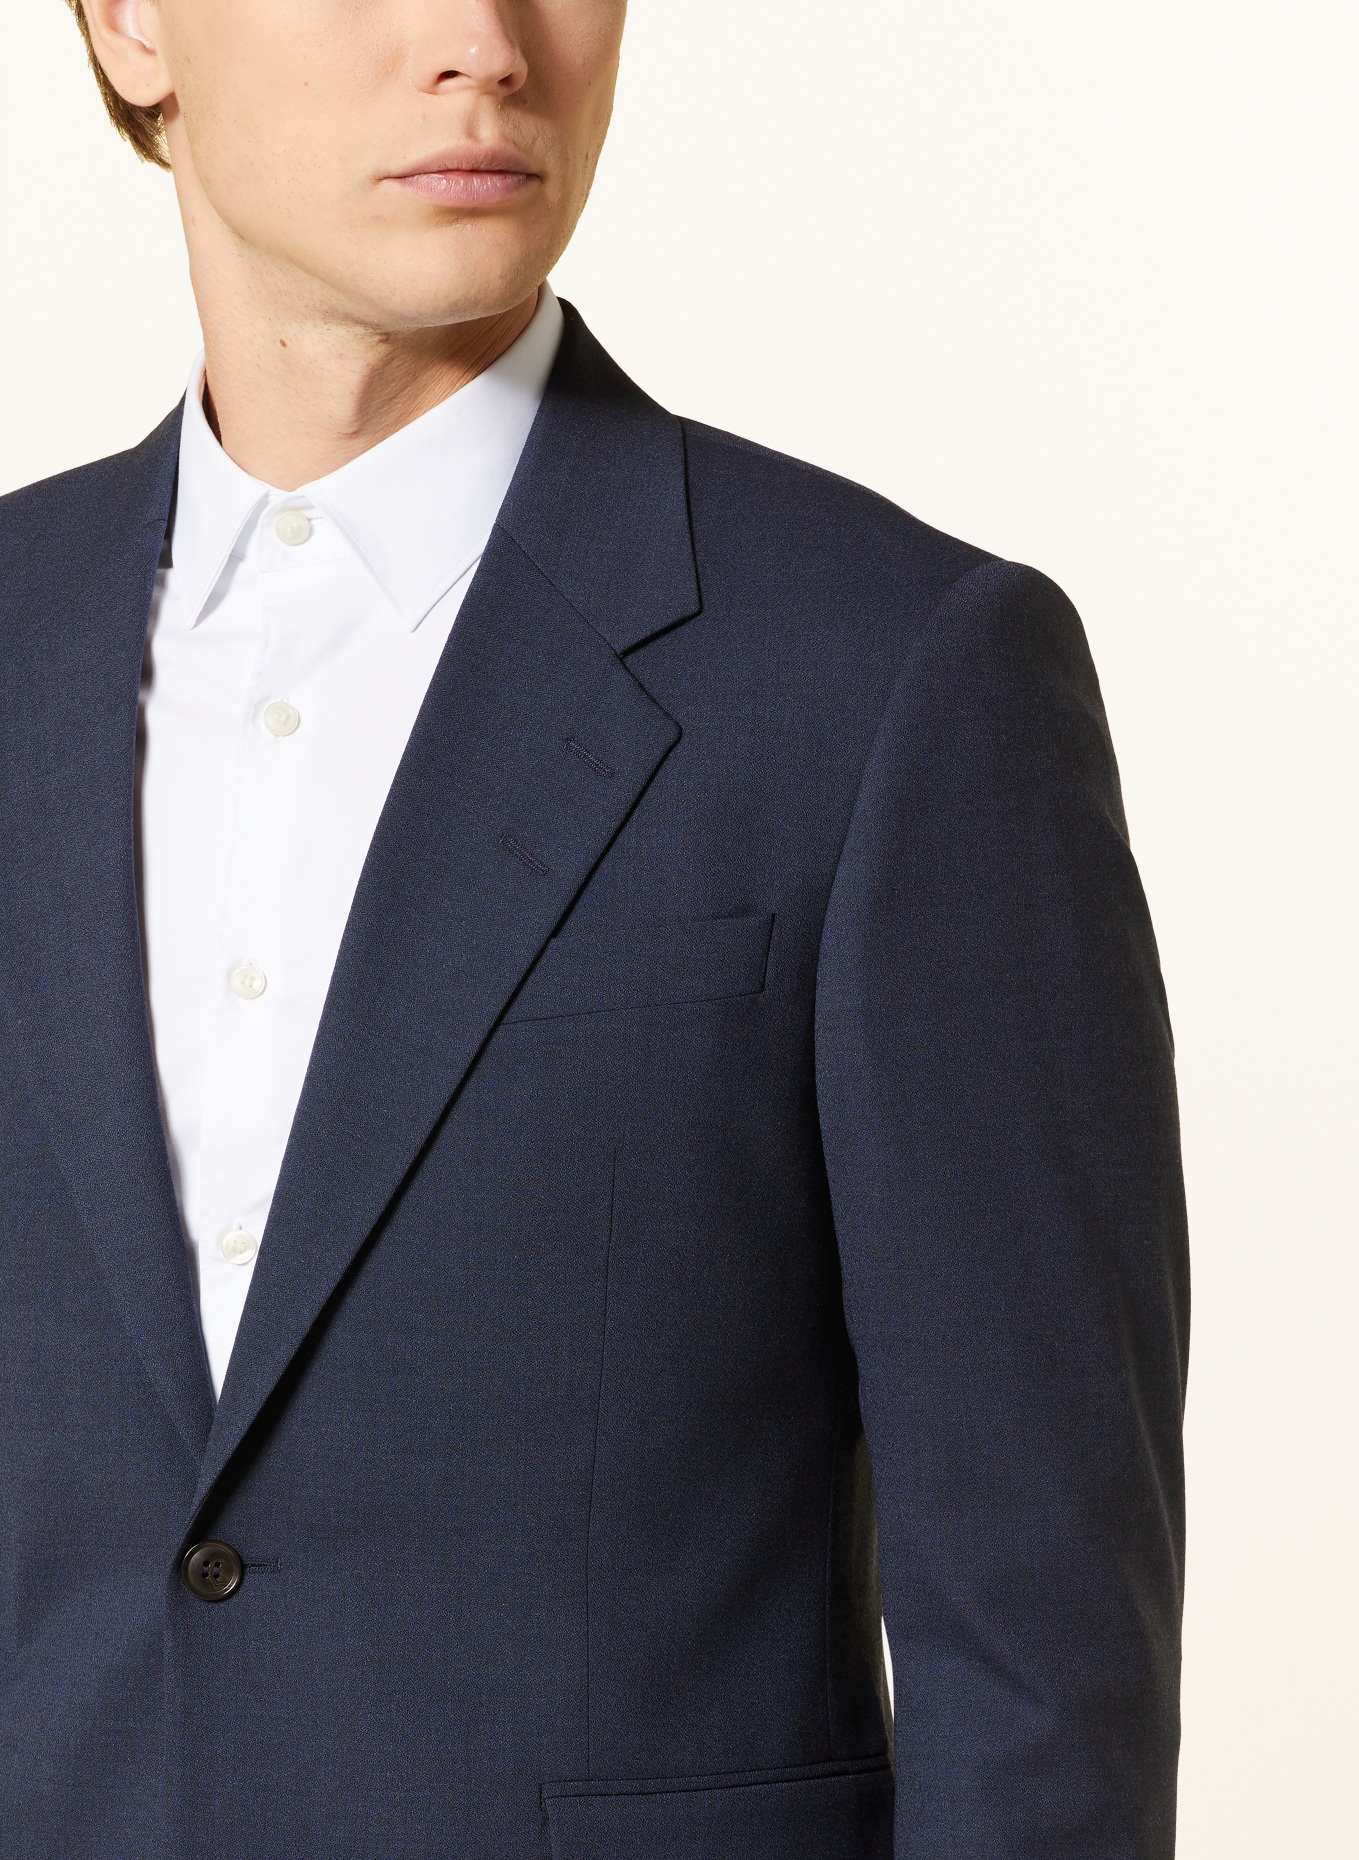 TIGER OF SWEDEN Suit jacket JULIEN regular fit, Color: 231 Dusty blue (Image 5)